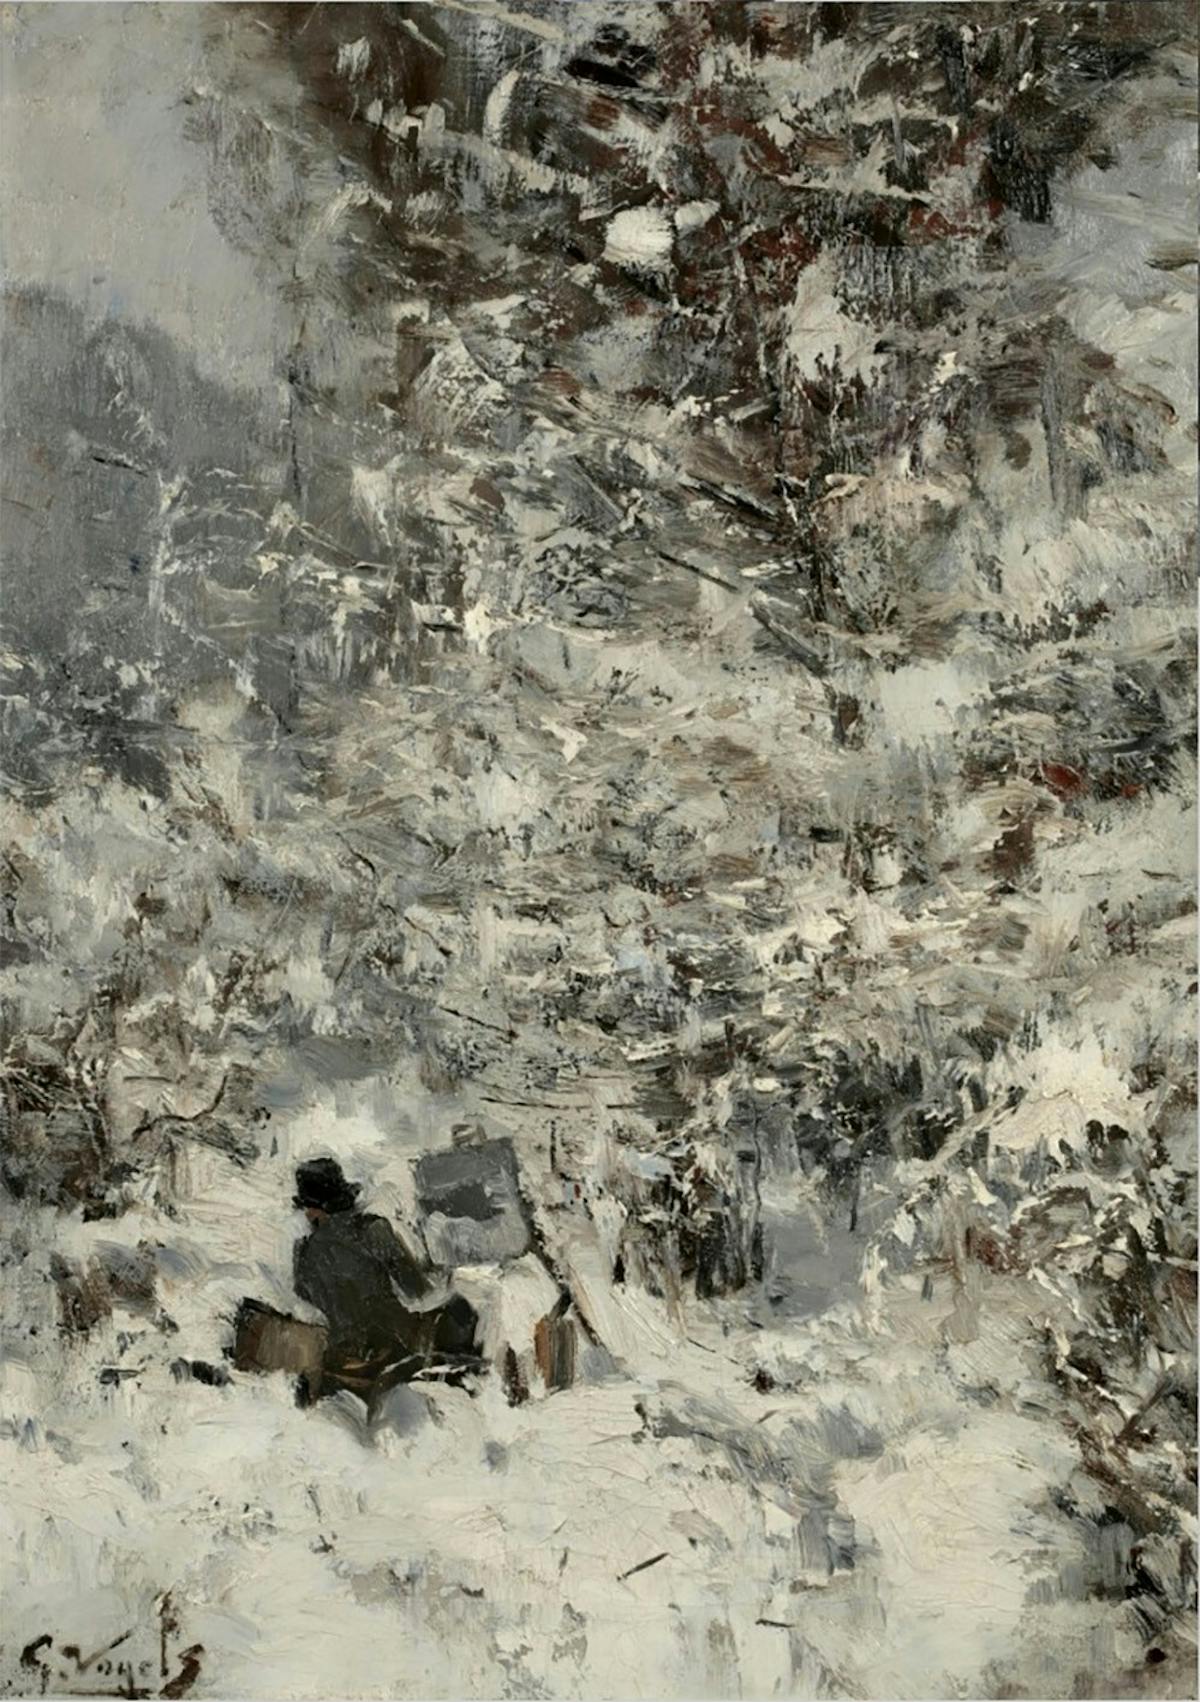 Guillaume Vogels, Pantazis peignant dans la neige